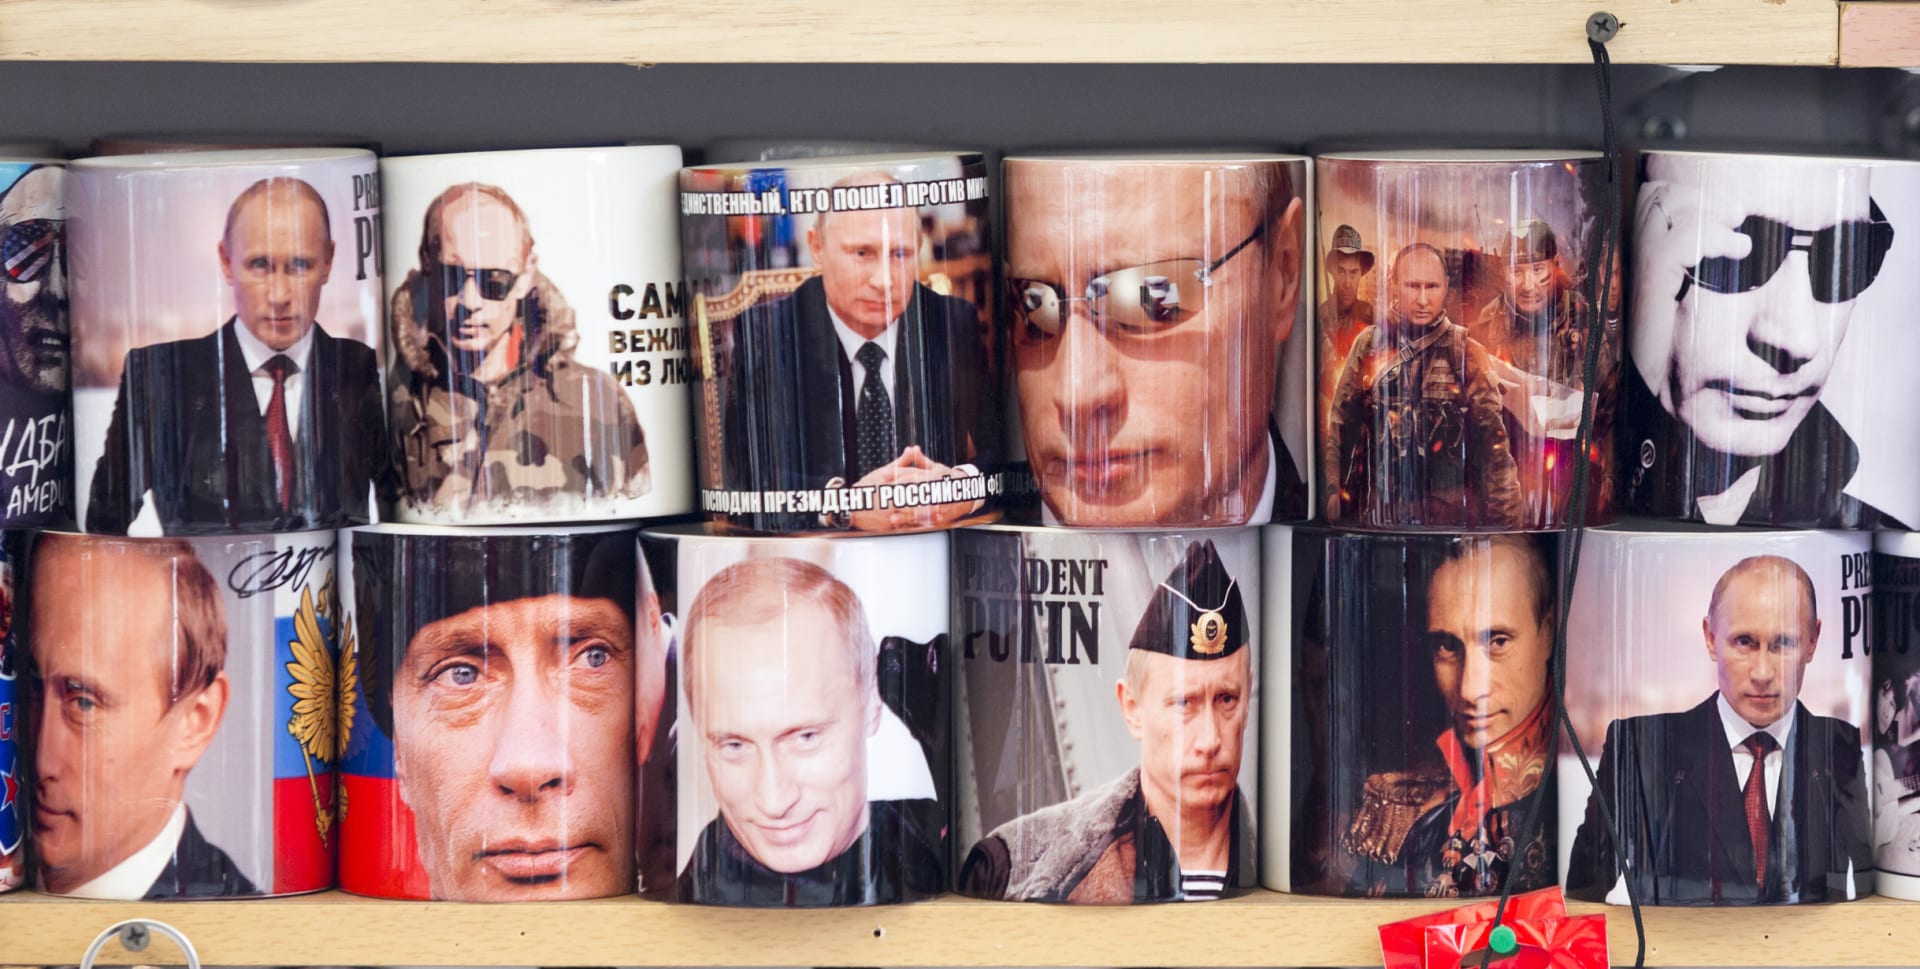 Vladimír Putin v obrazech na hrnečcích